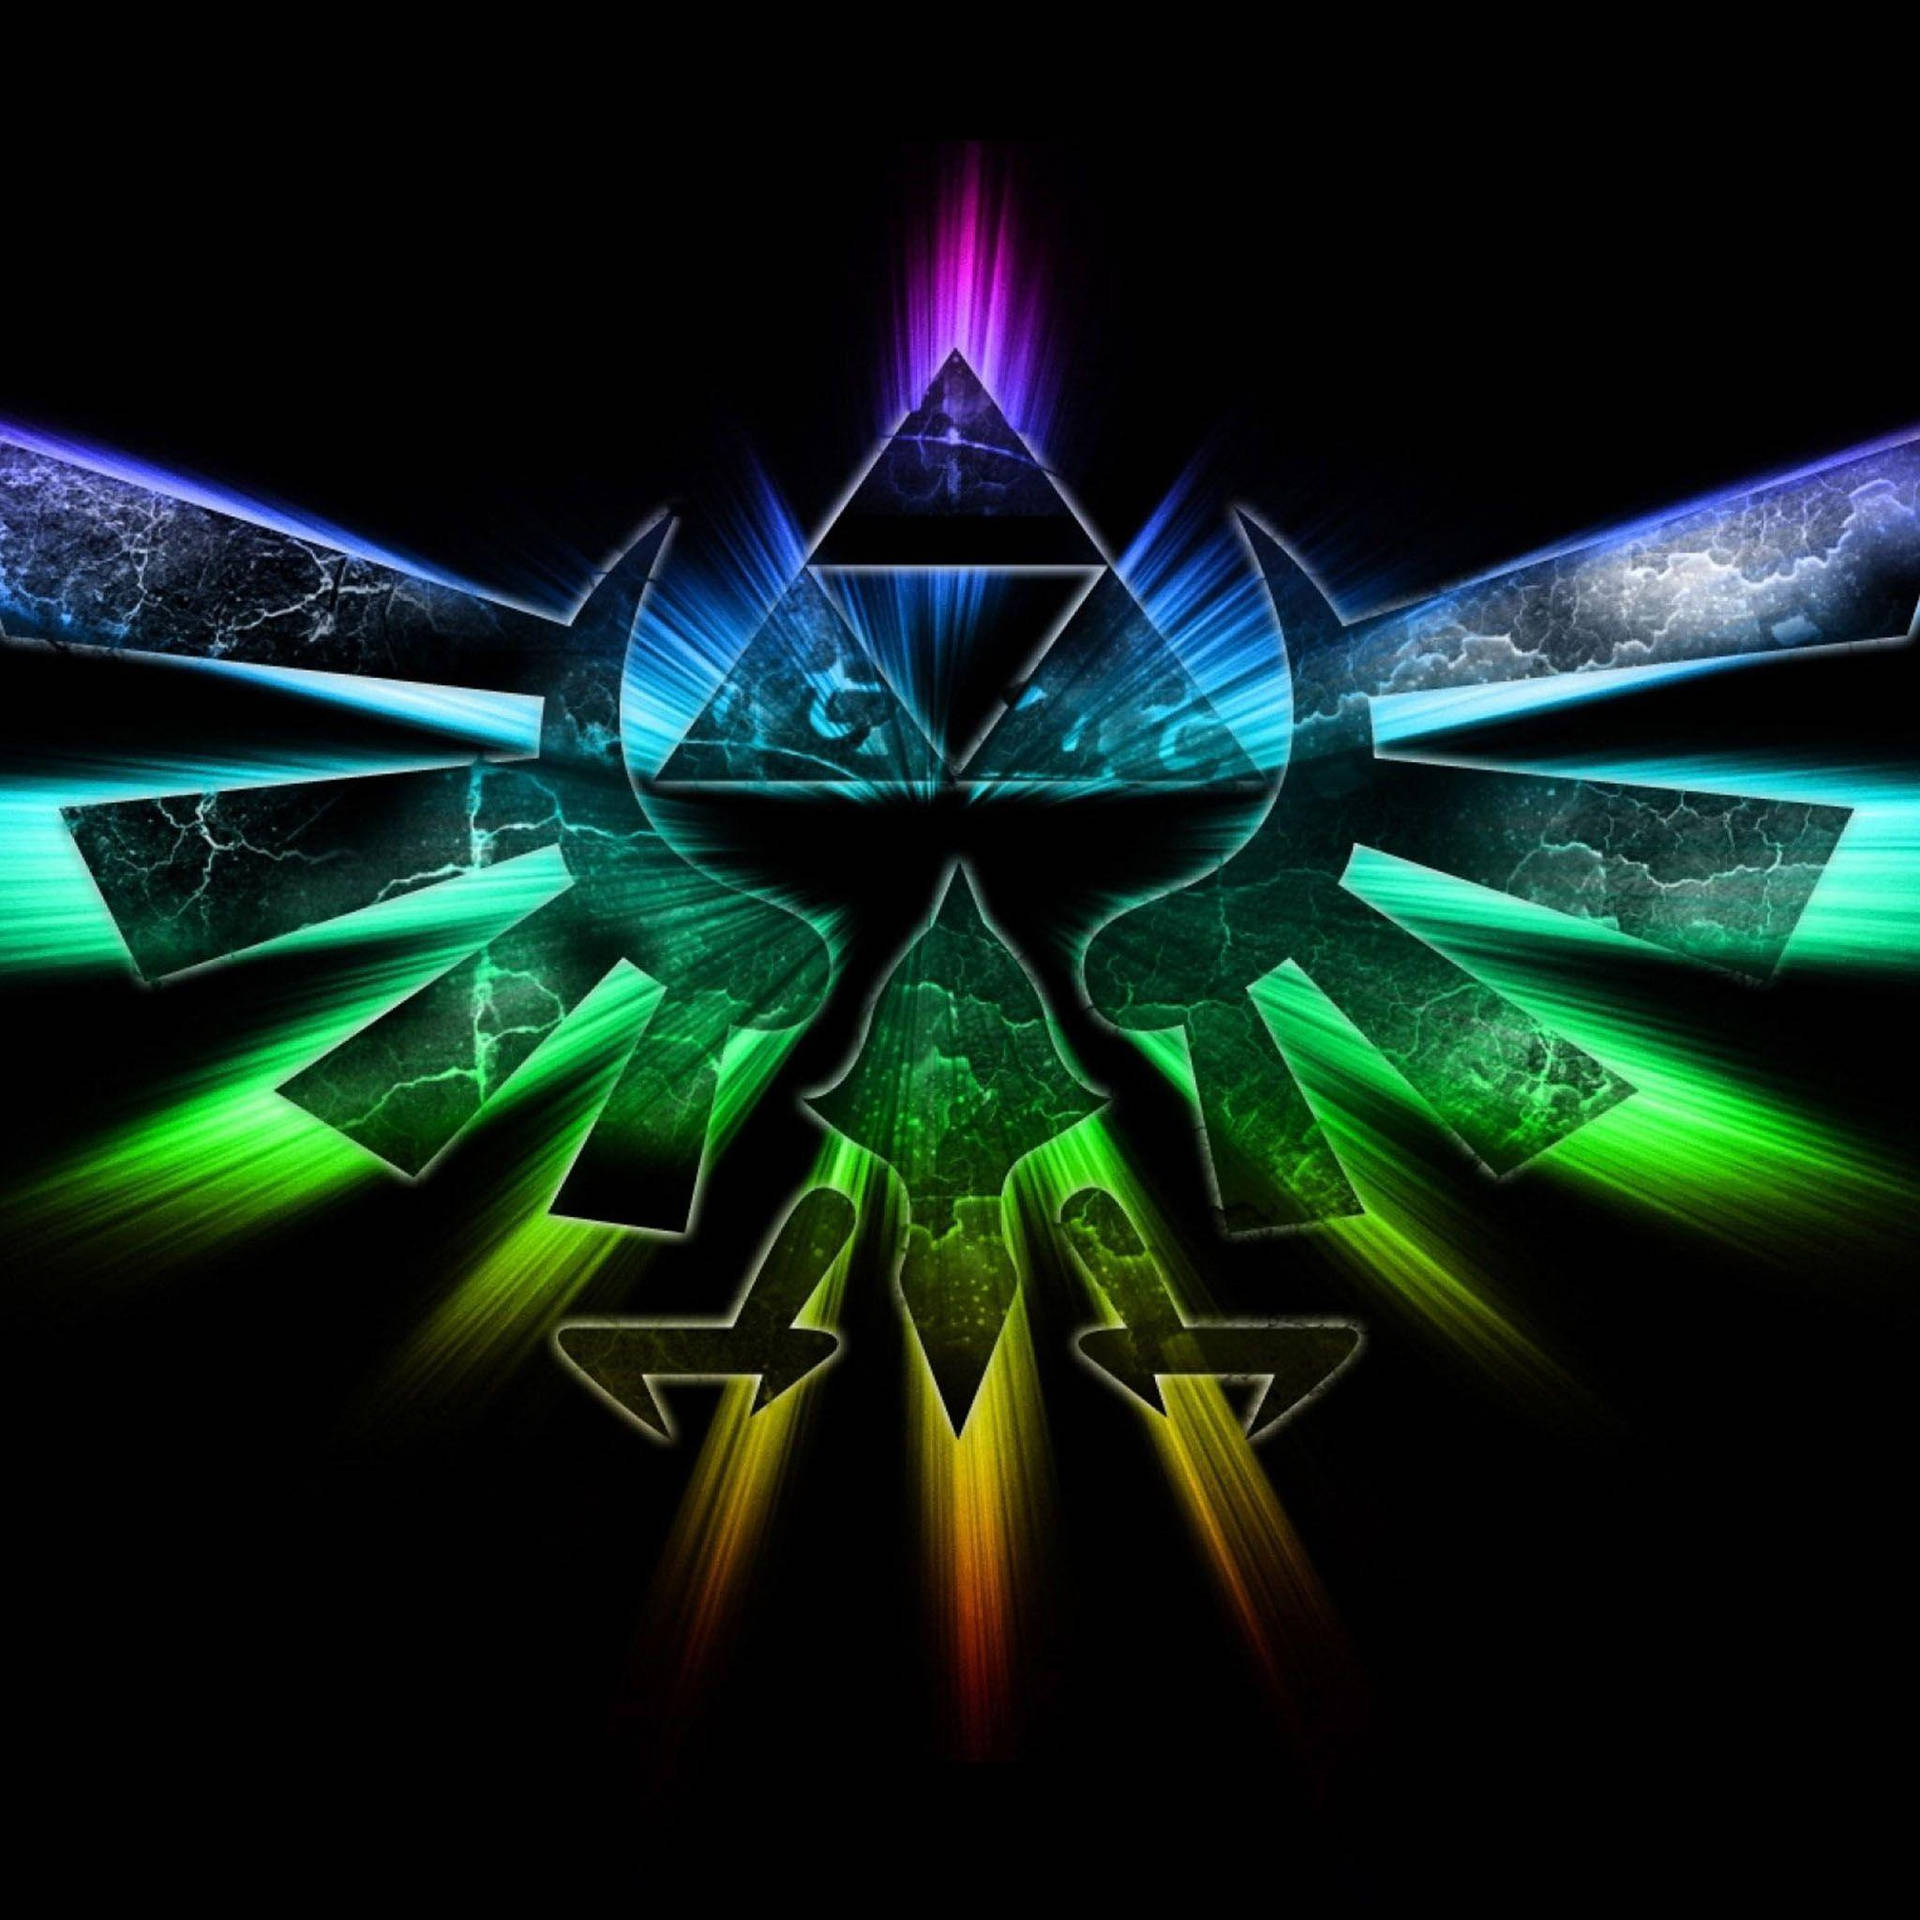 The Legend of Zelda Triforce Wallpaper for Phone by AmaraDSaya on DeviantArt